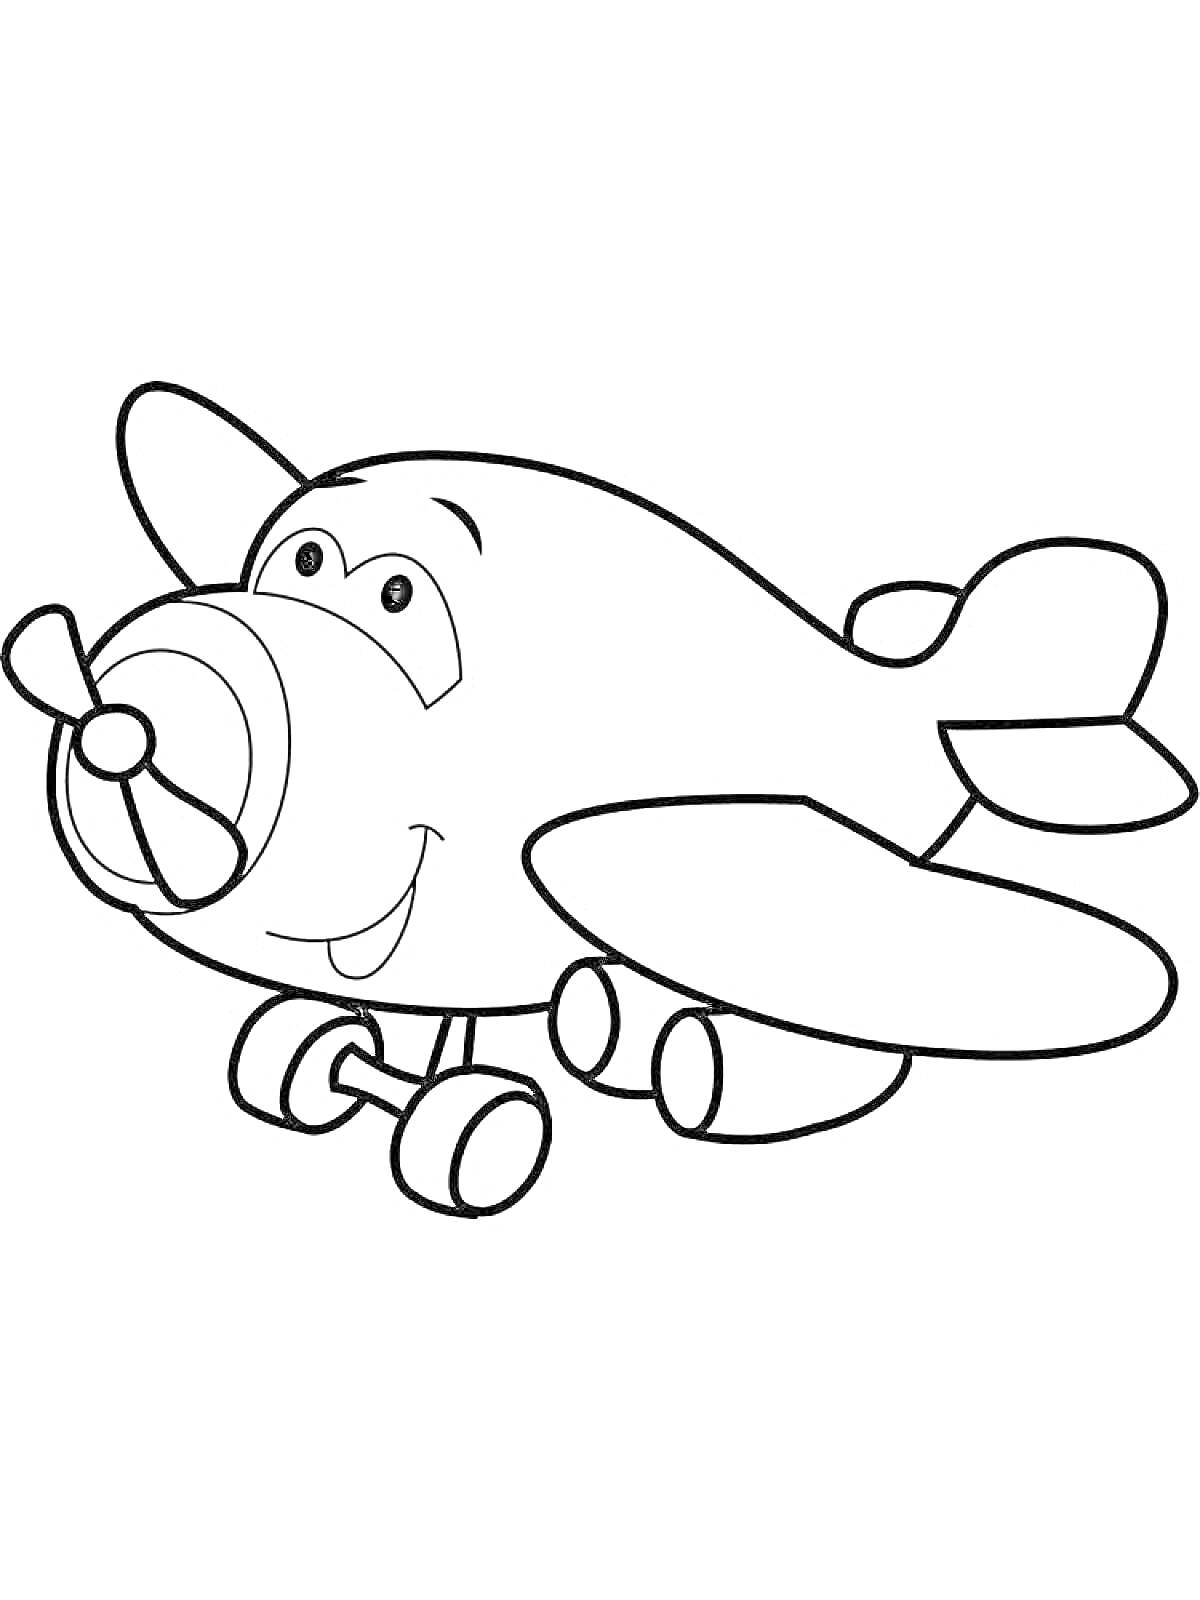 Раскраска Самолет с улыбающейся мордочкой, крыльями и шасси